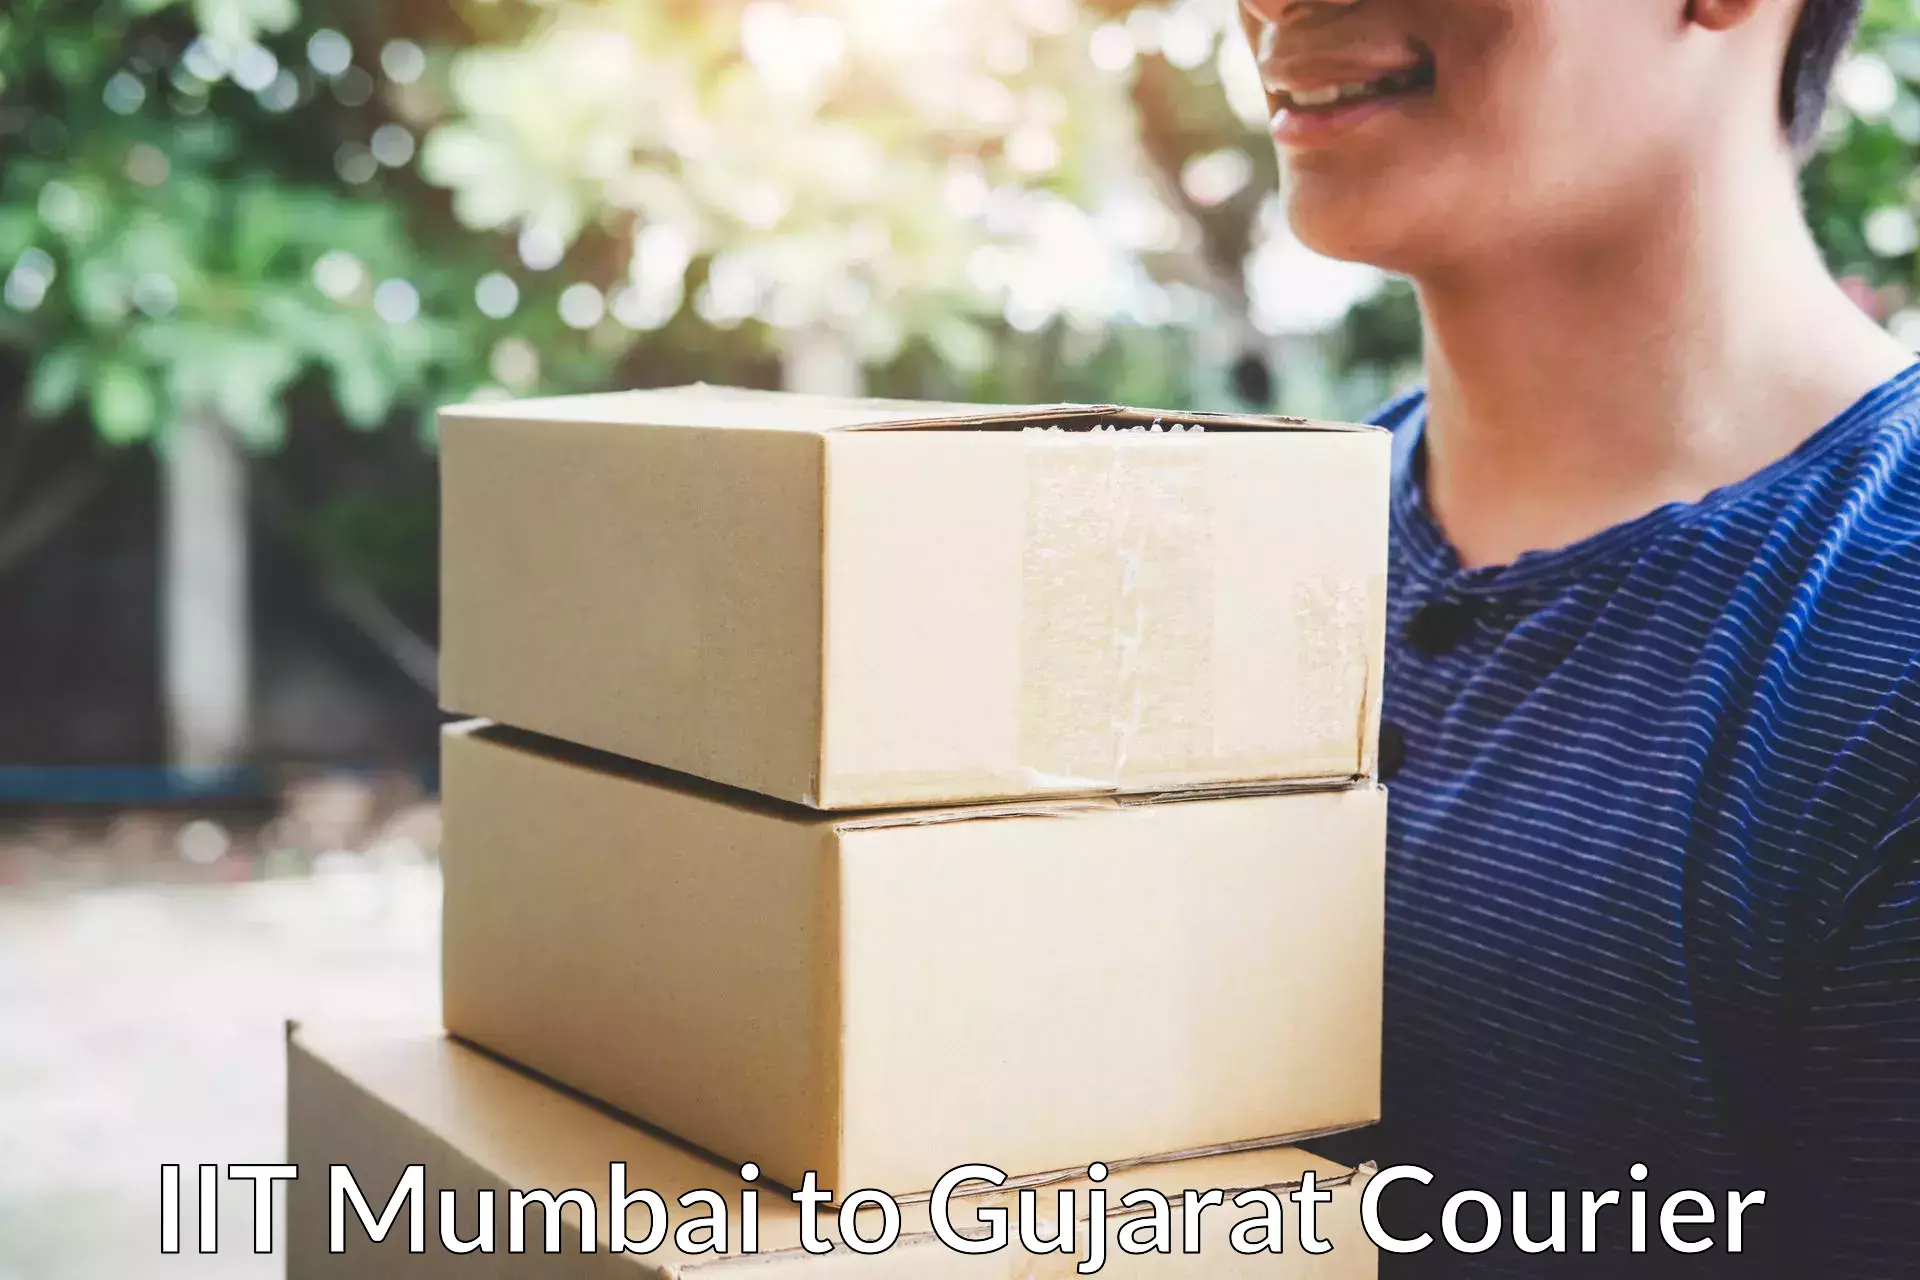 Skilled furniture transport IIT Mumbai to Gujarat